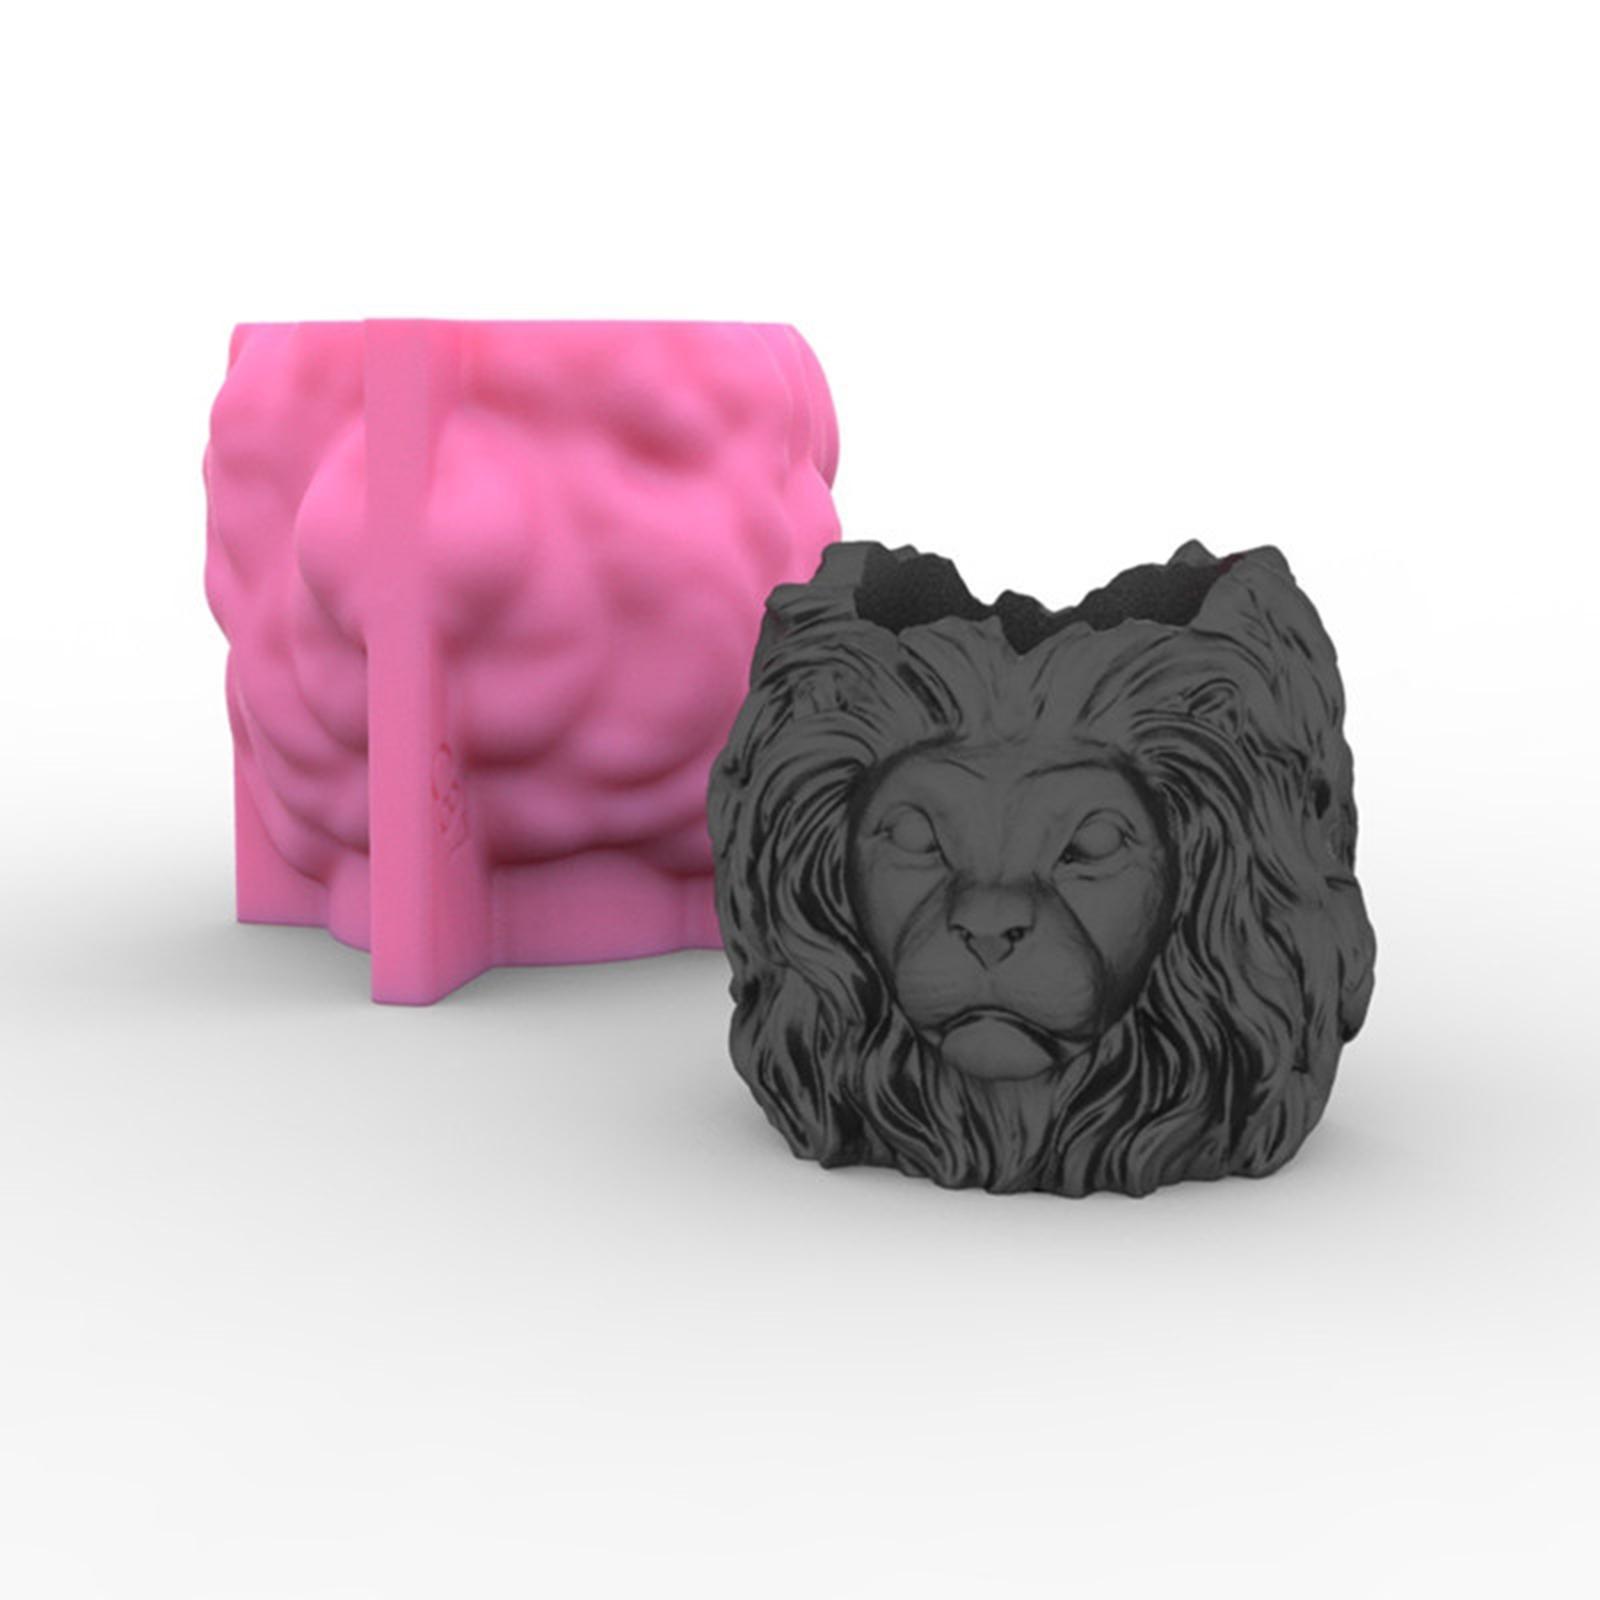 Lion Head Shape Plant Pots Silicone  DIY Candle